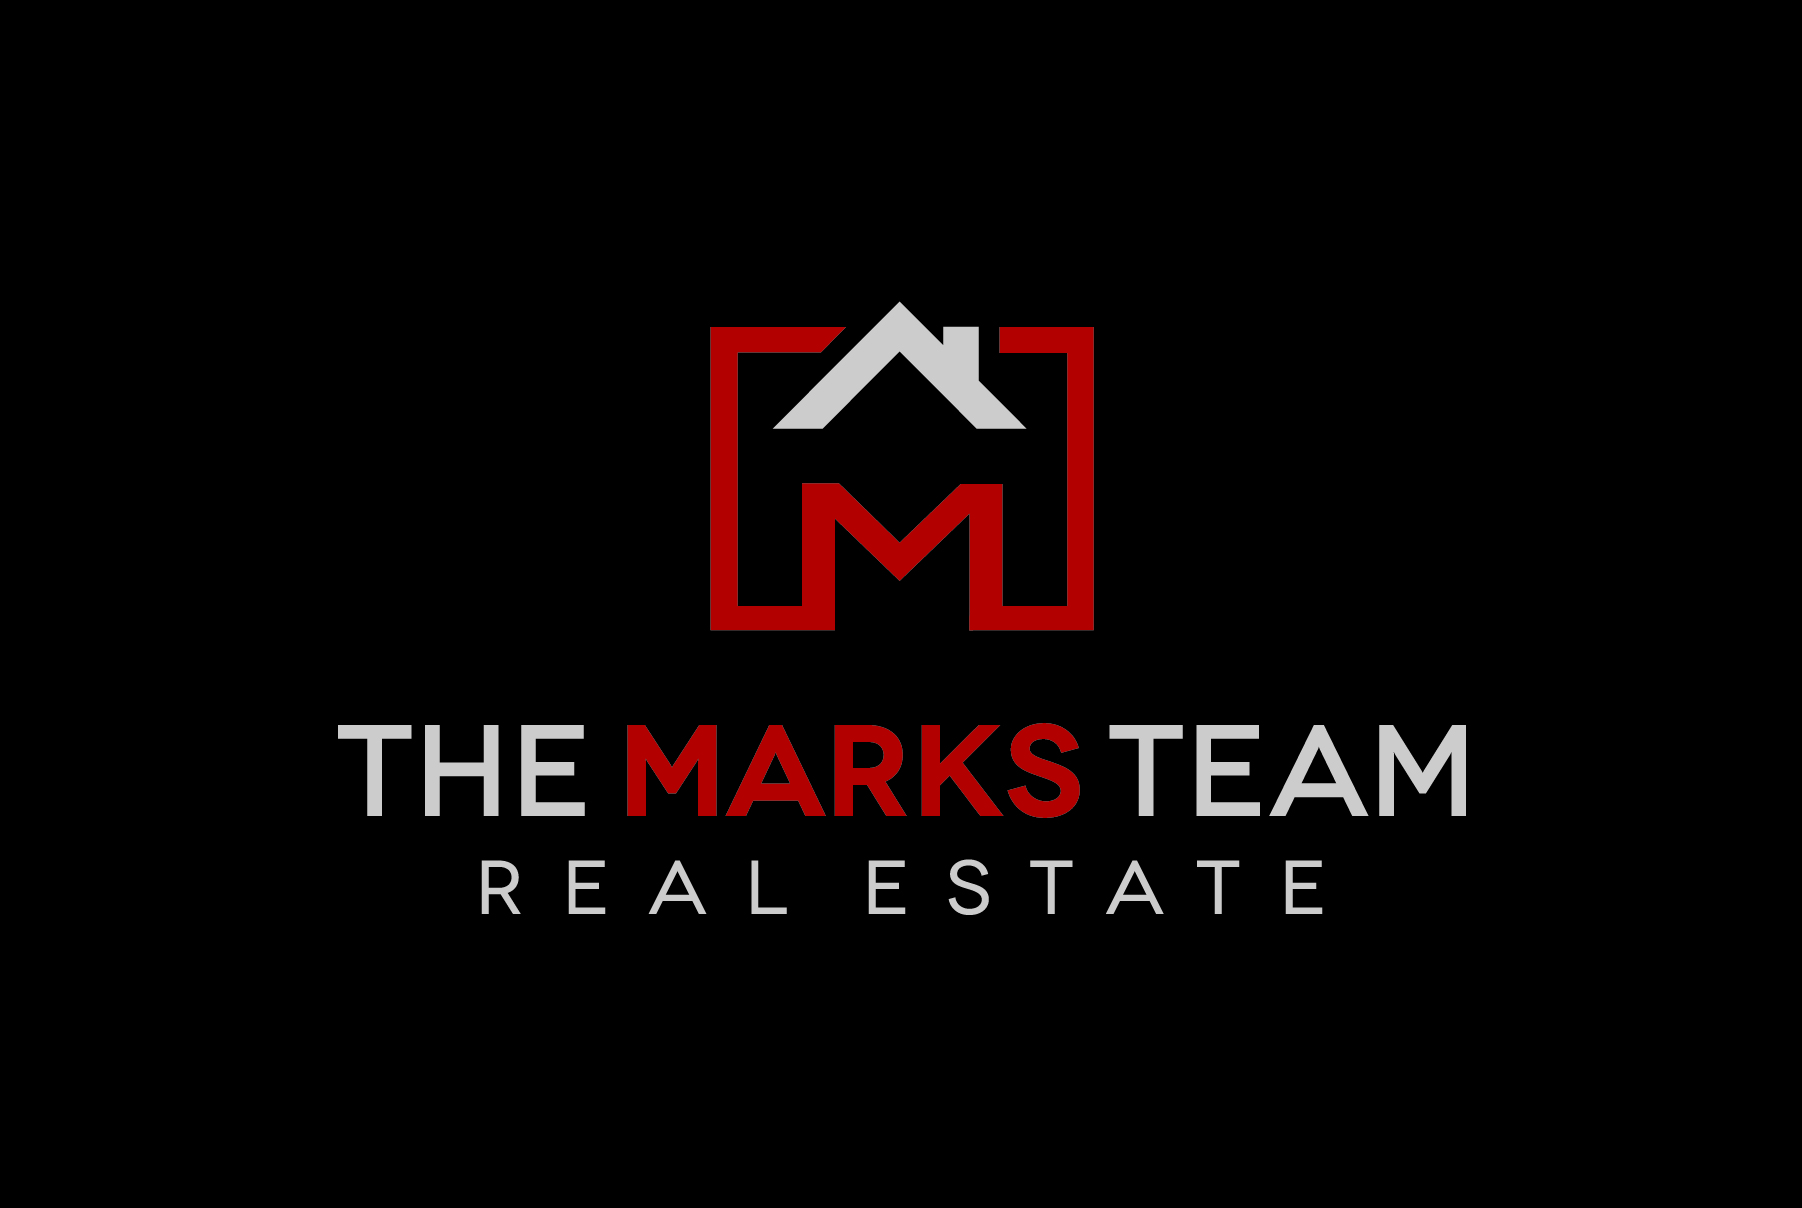 Sponsor The Marks Team, Real Estate